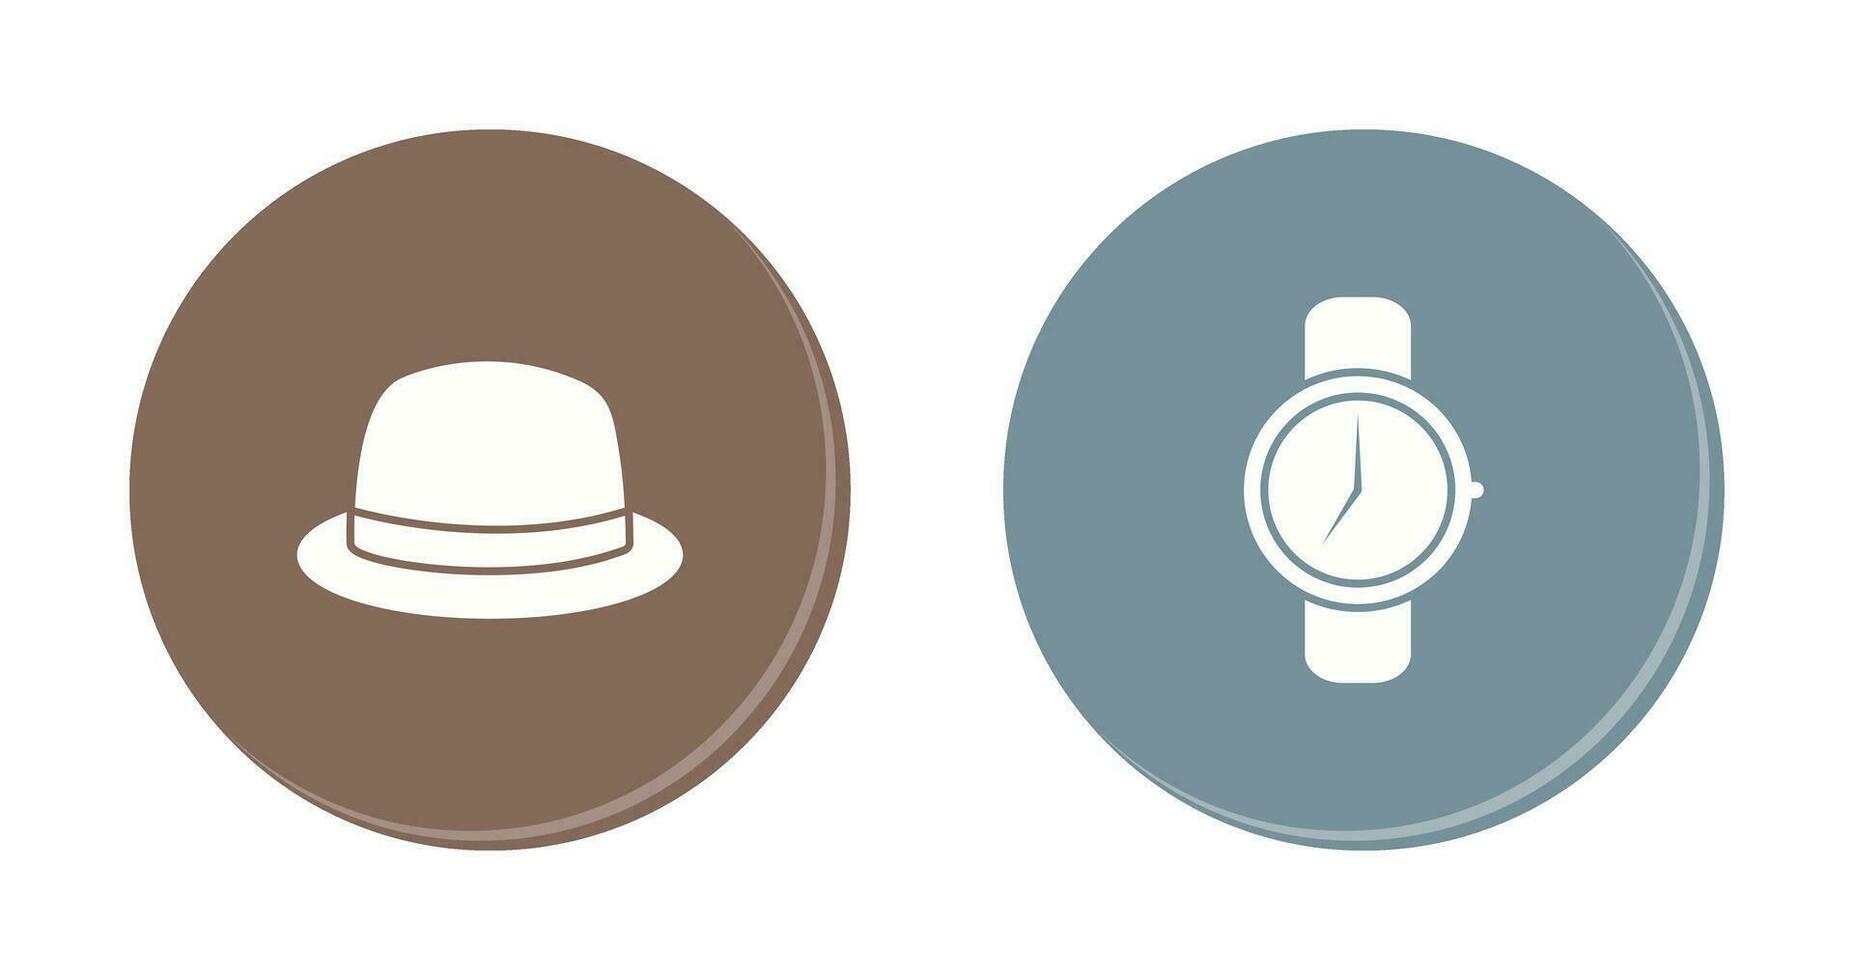 Hut und Uhr Symbol vektor